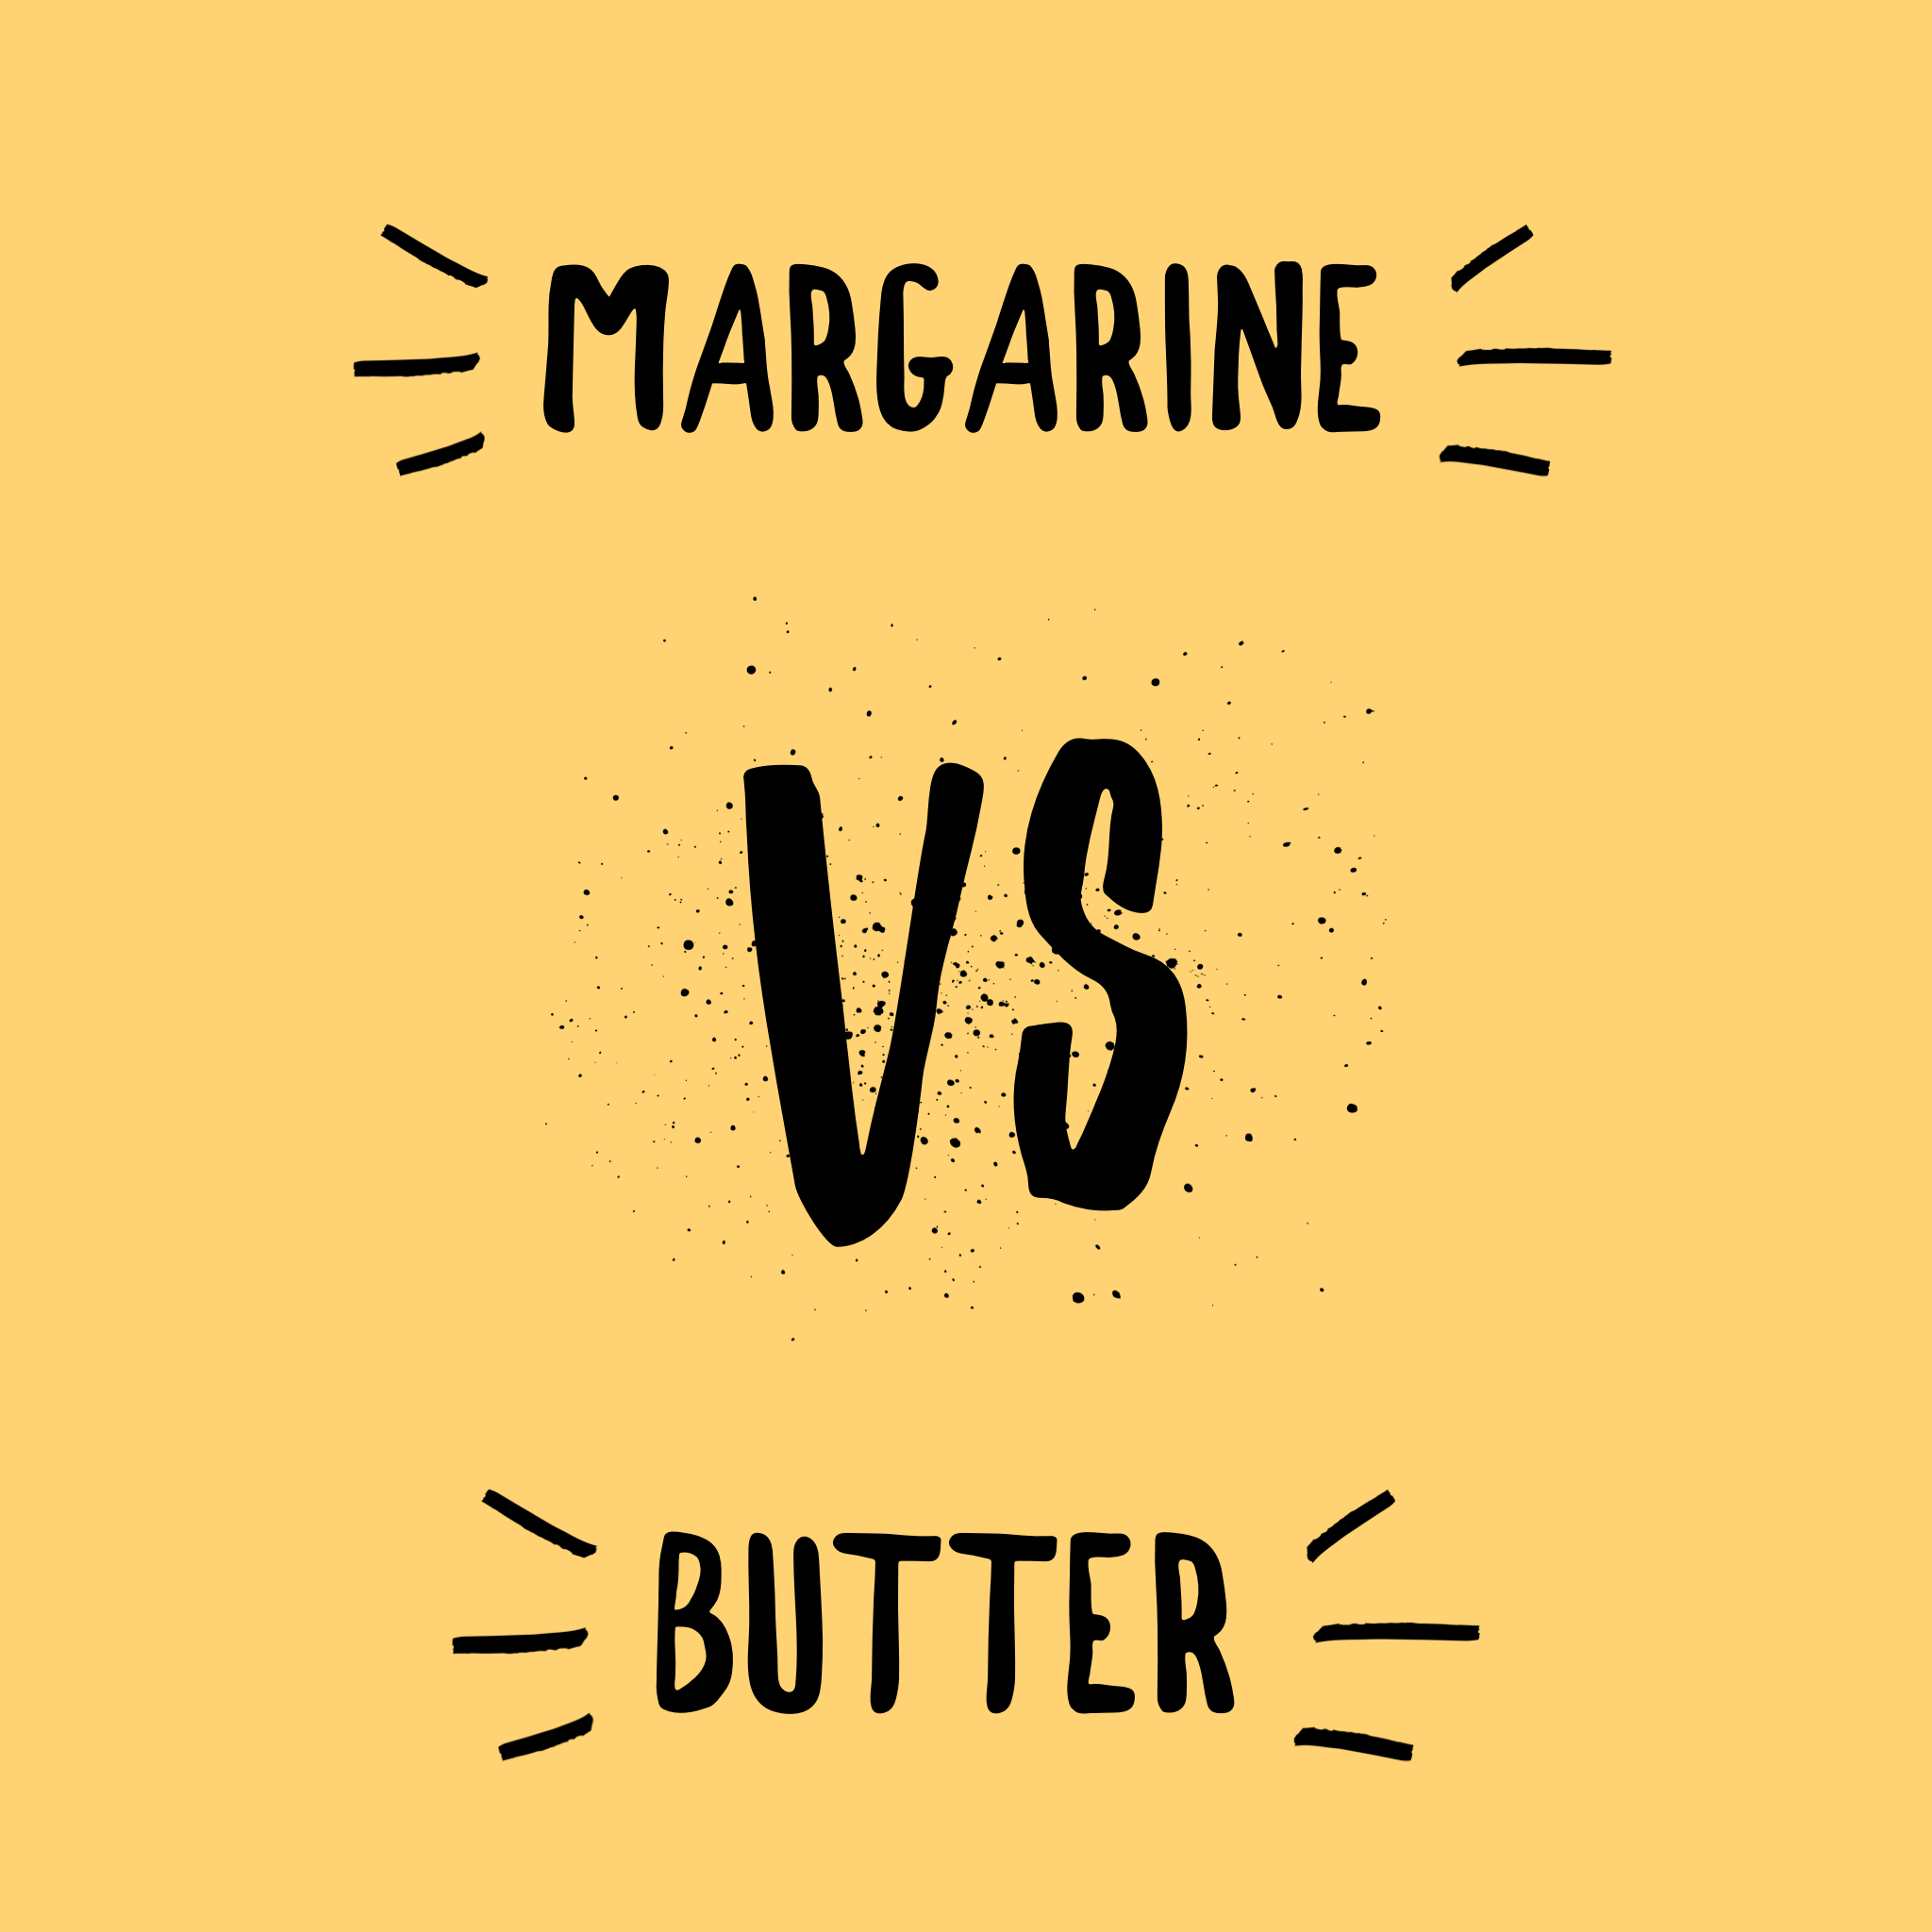 Margarine vs Butter